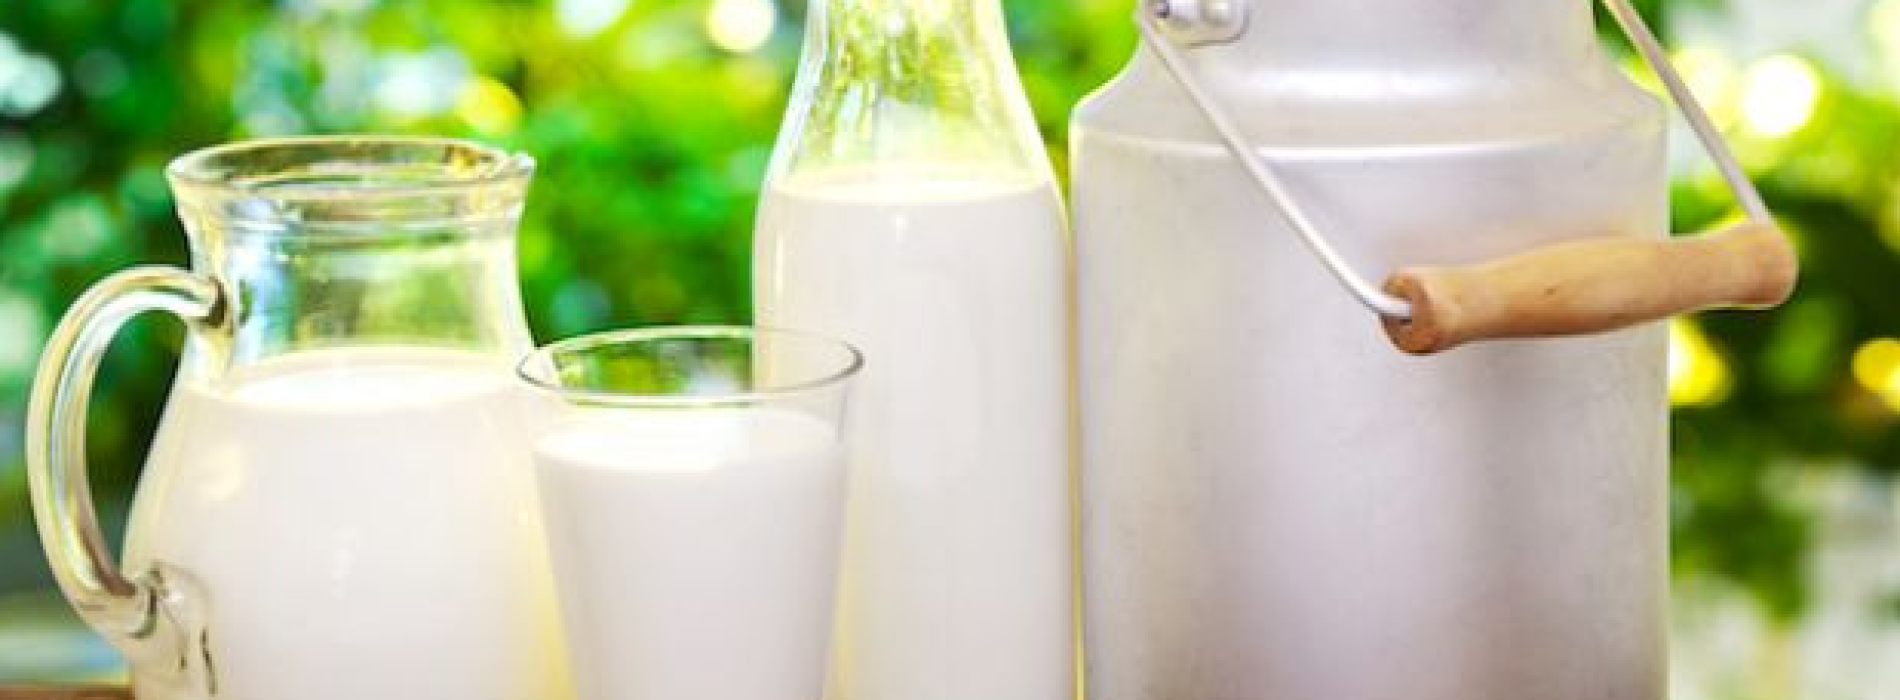 Giornata mondiale del latte, Città della Scienza diventa bianca